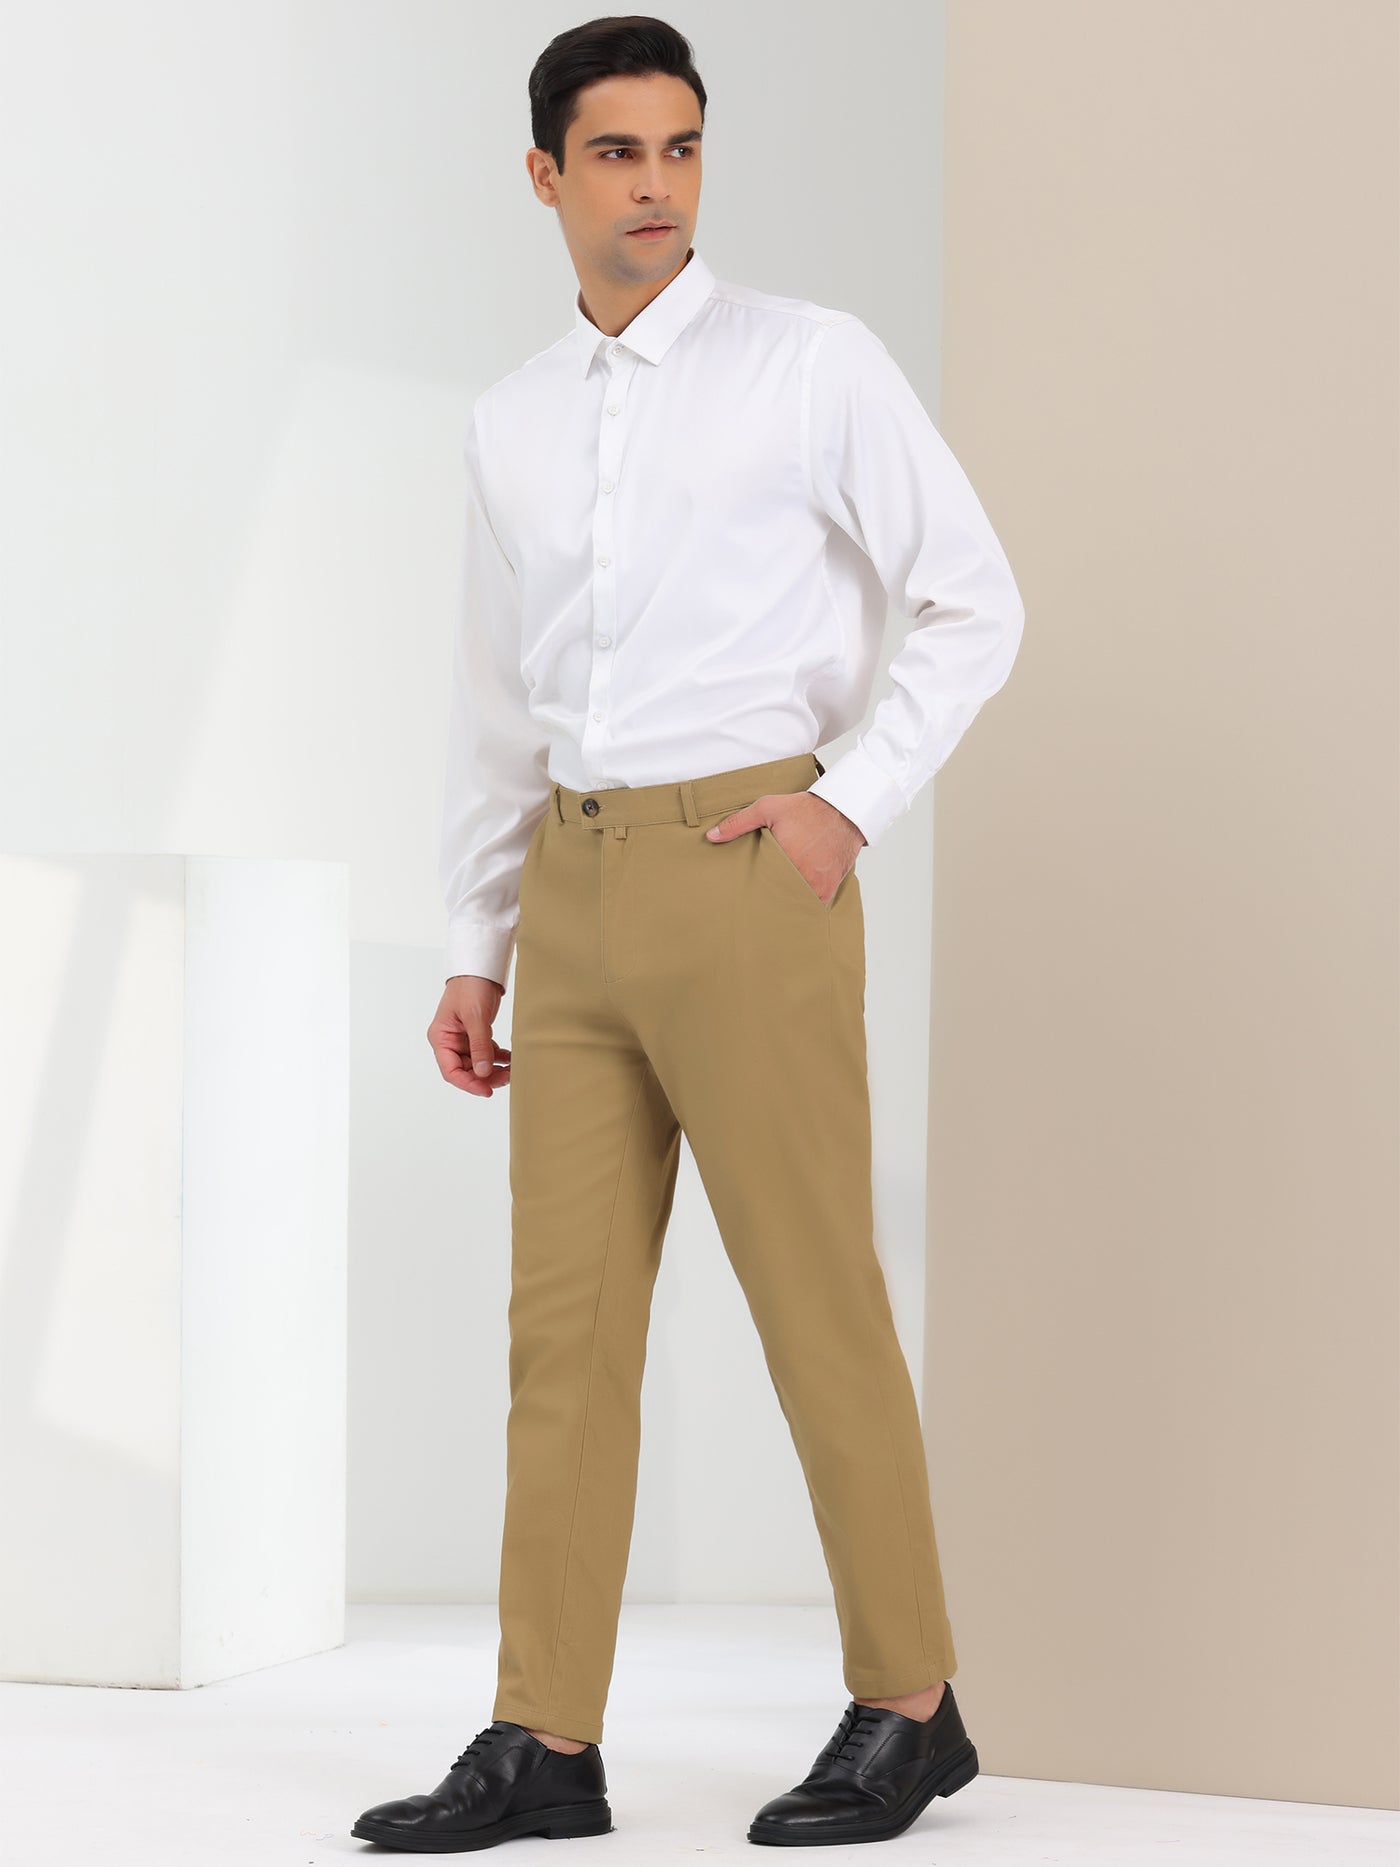 Bublédon Men's Dress Pants Flat Front Solid Classic Fit Business Prom Suit Trousers